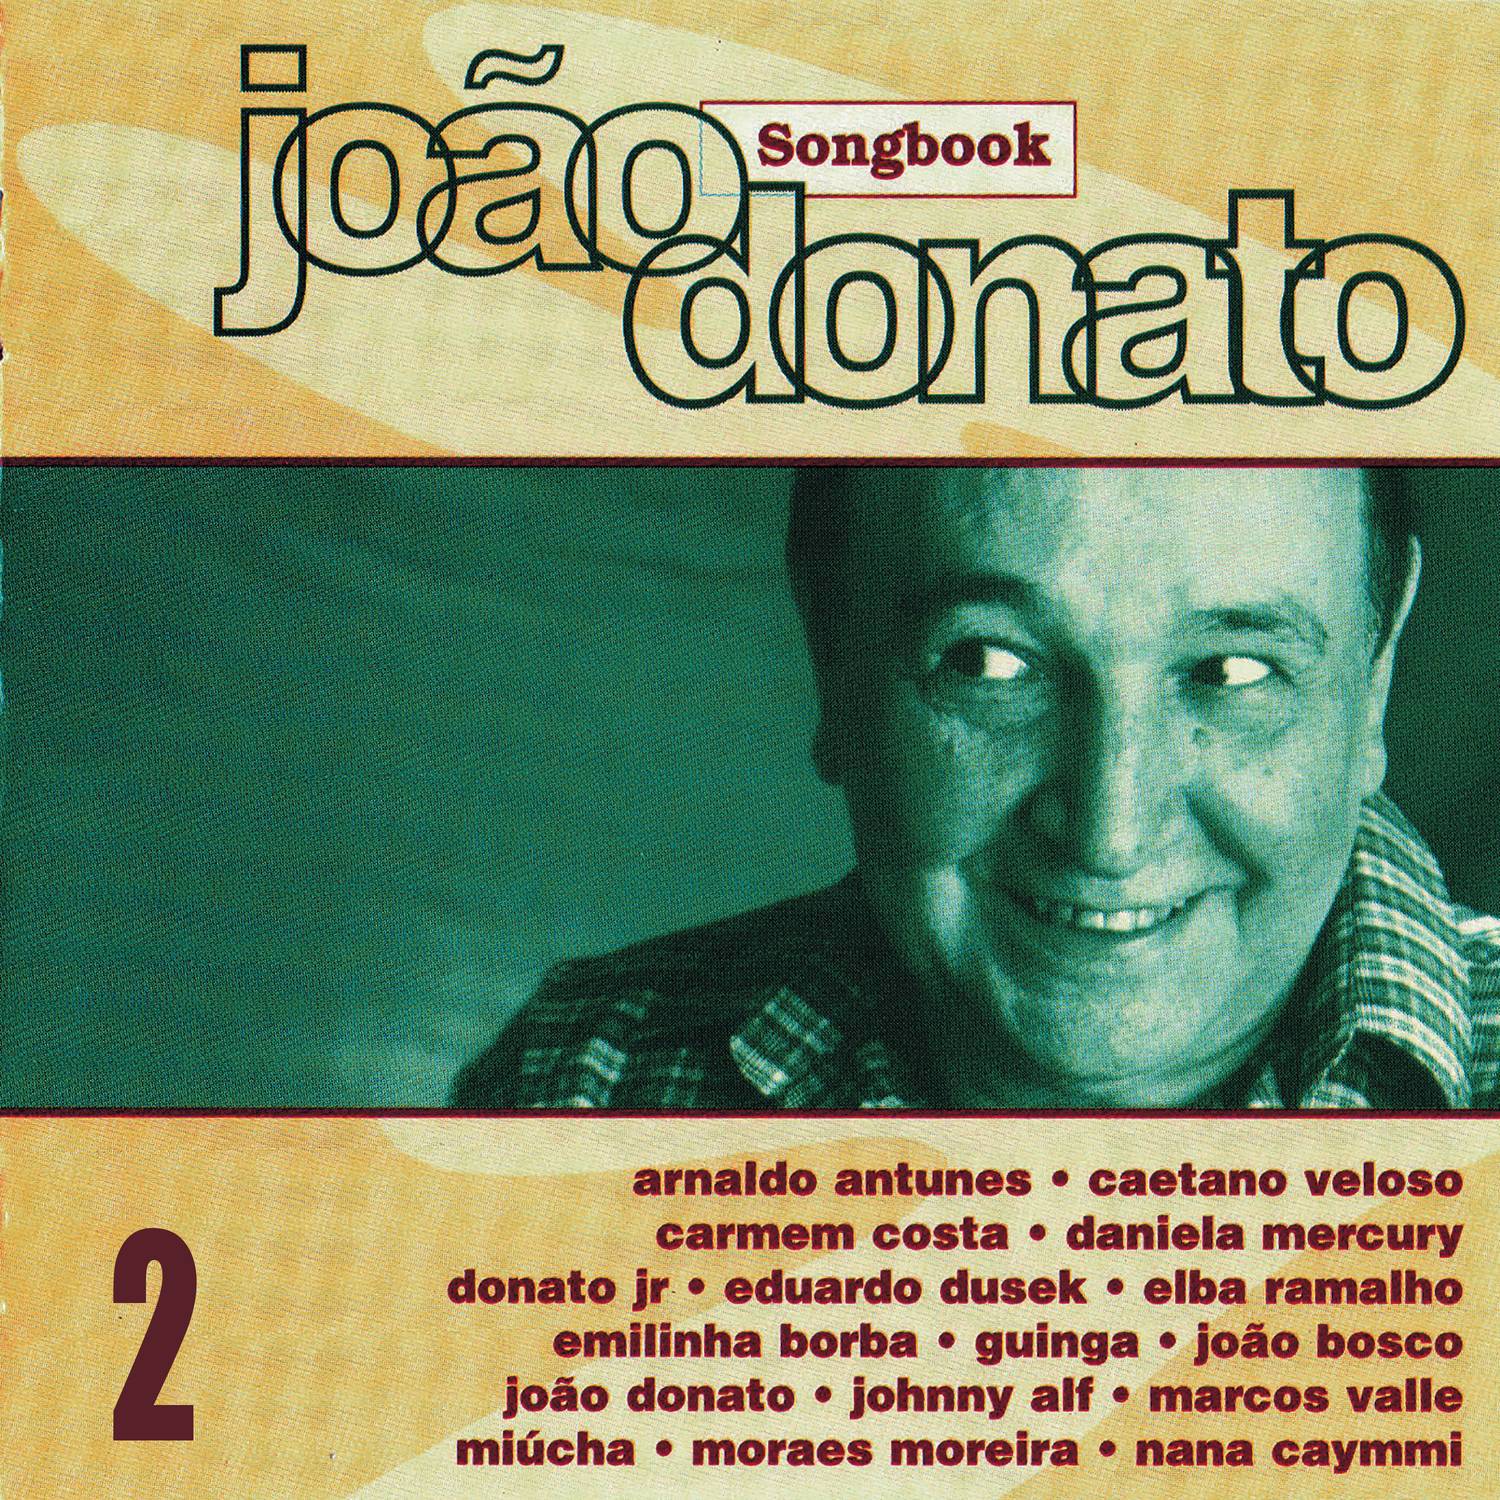 Songbook Jo o Donato, Vol. 2